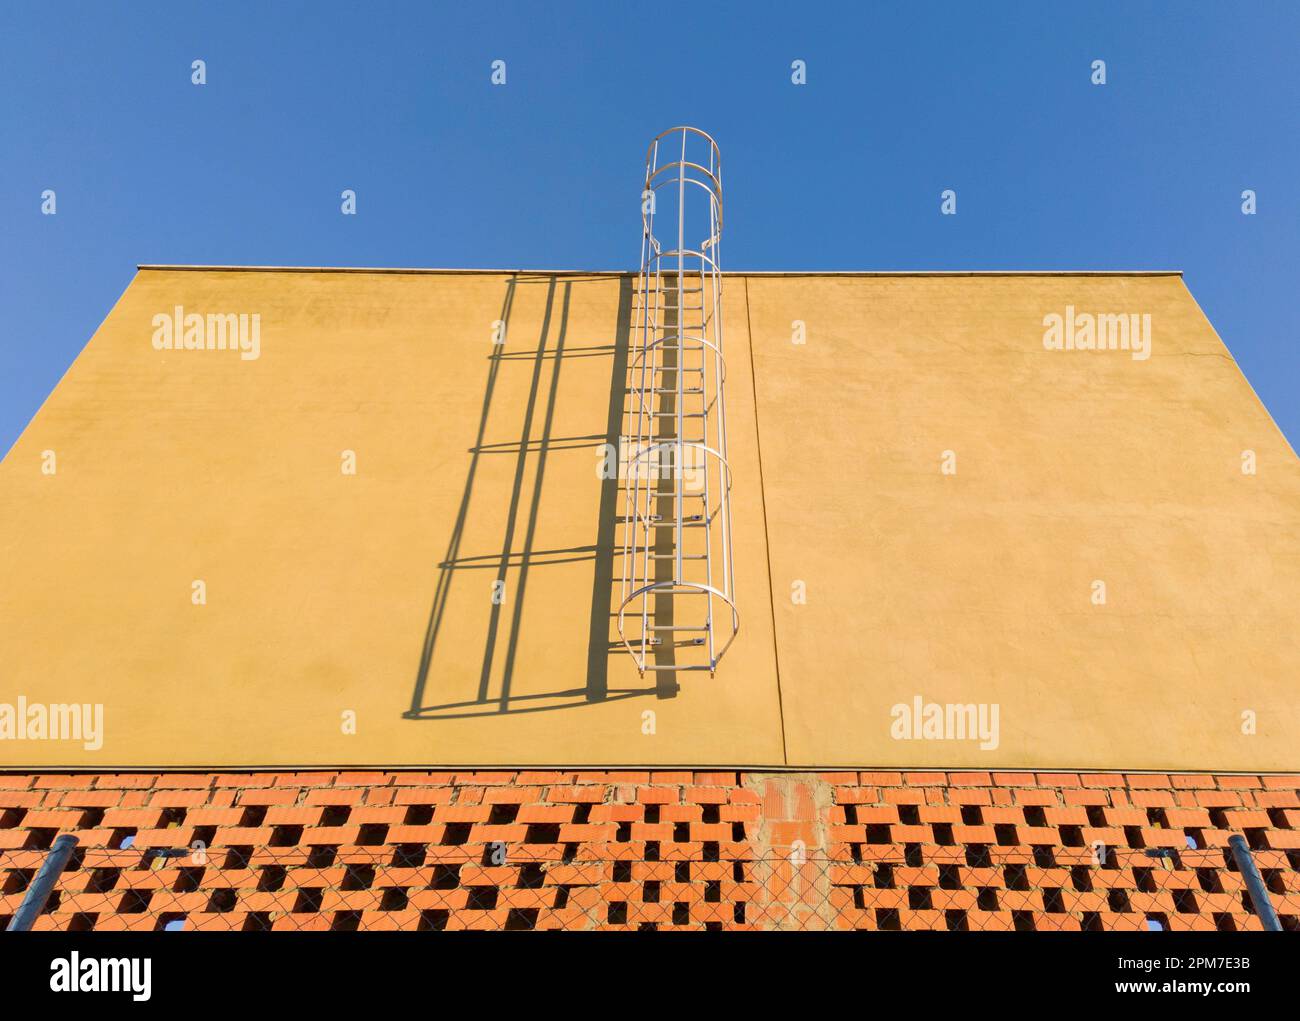 Wartungsleiter auf einem im Bau befindlichen Gewerbegelände. Blauer Himmelshintergrund. Stockfoto